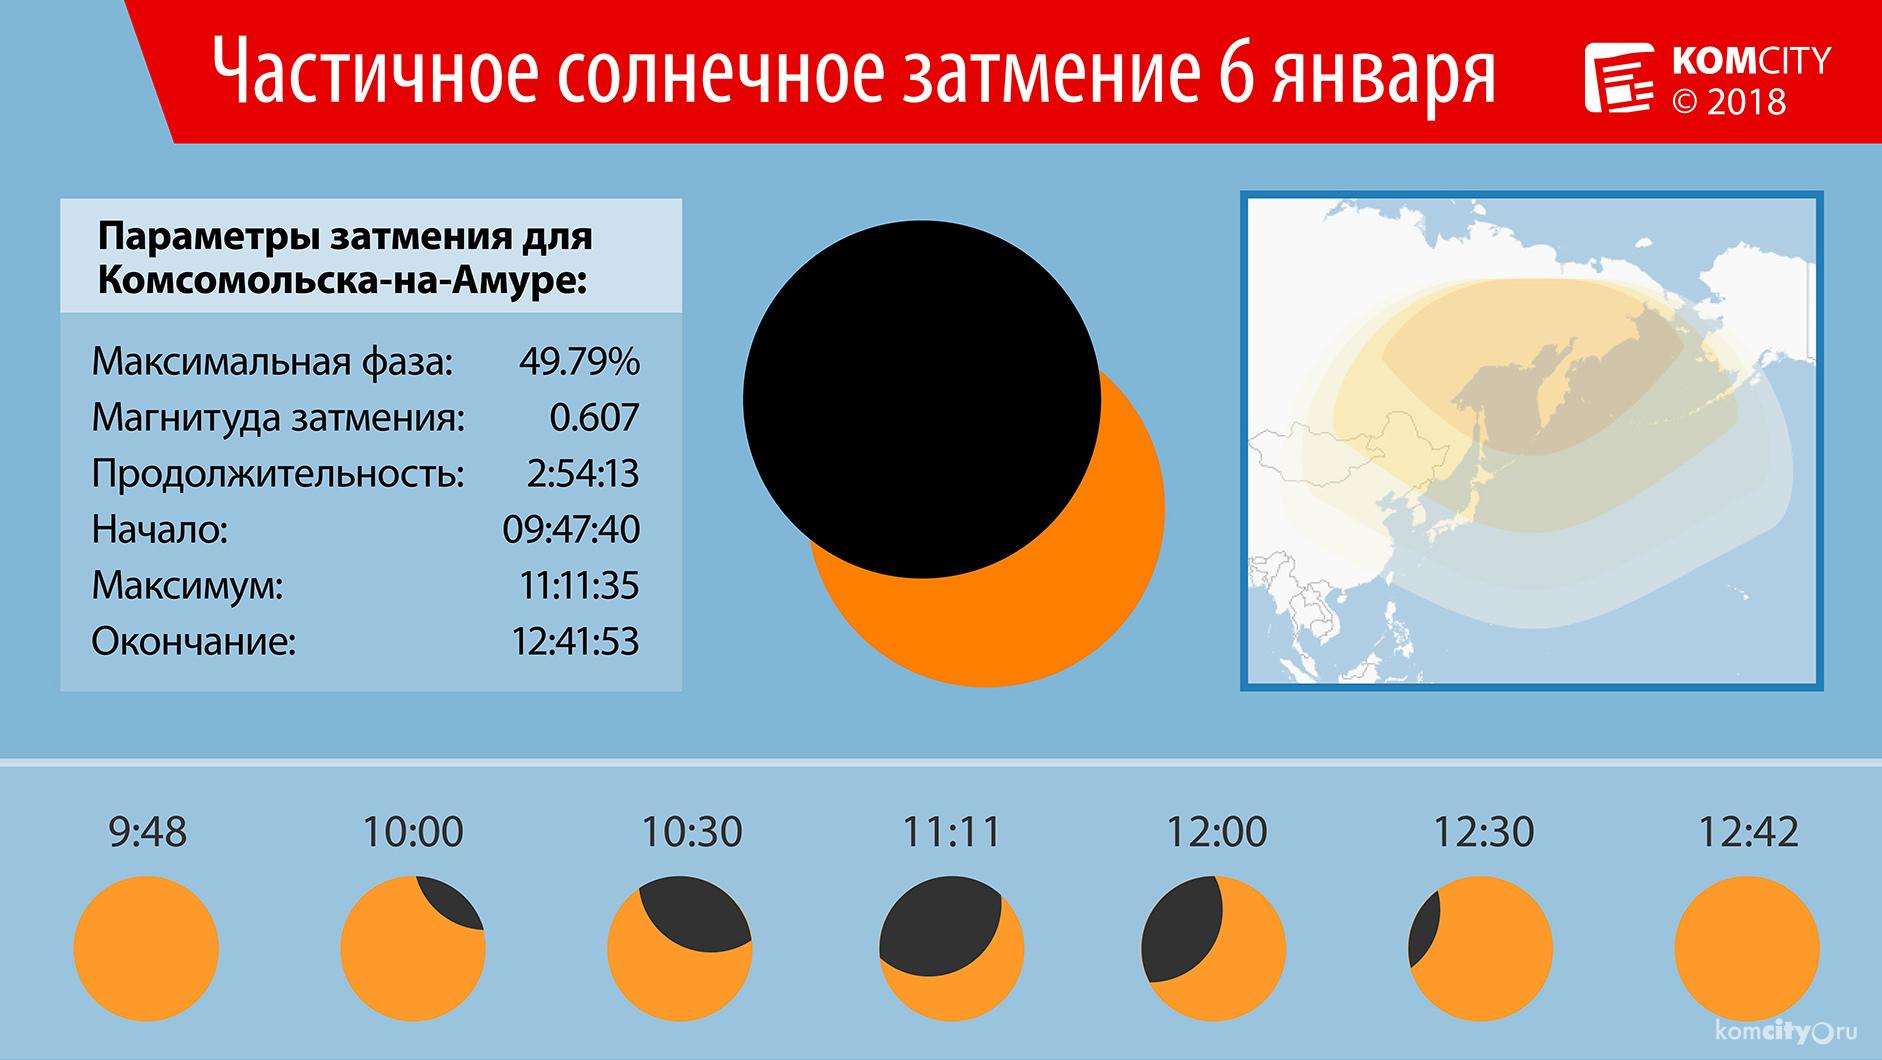 Завтра утром жители Комсомольска-на-Амуре увидят частичное солнечное затмение